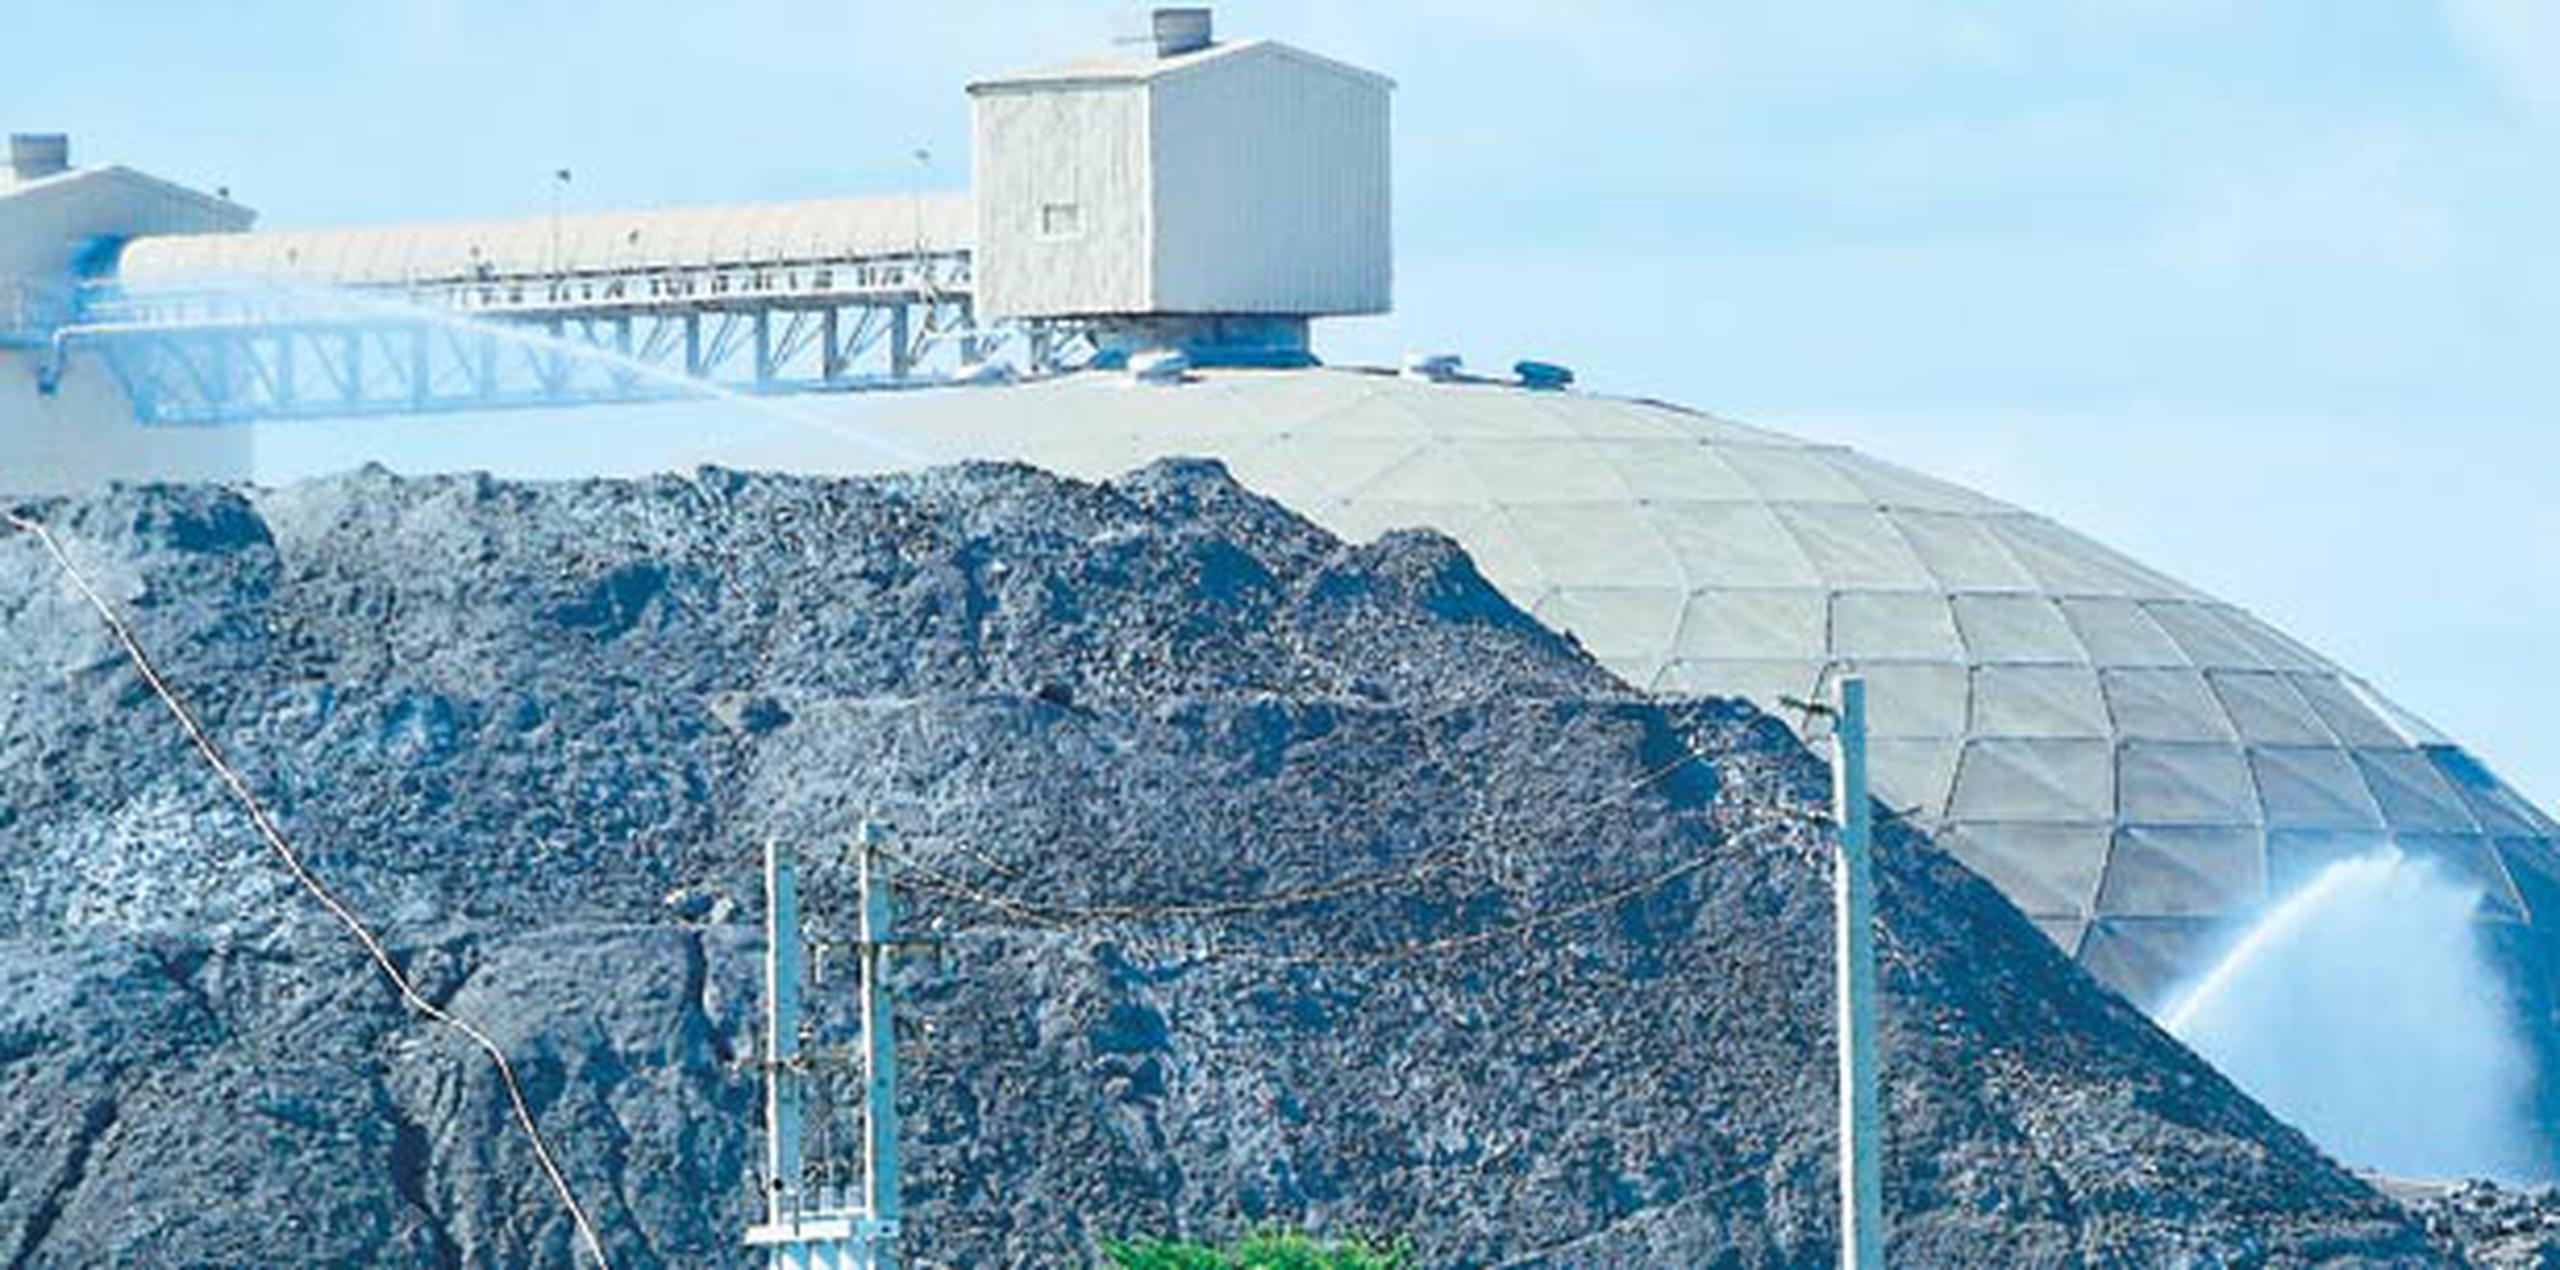 Así luce la acumulación de cenizas de carbón humedecidas en las inmediaciones de la planta generadora AES en Guayama por la que representantes de la agencia culpan a manifestantes. (tony.zayas@gfrmedia.com)